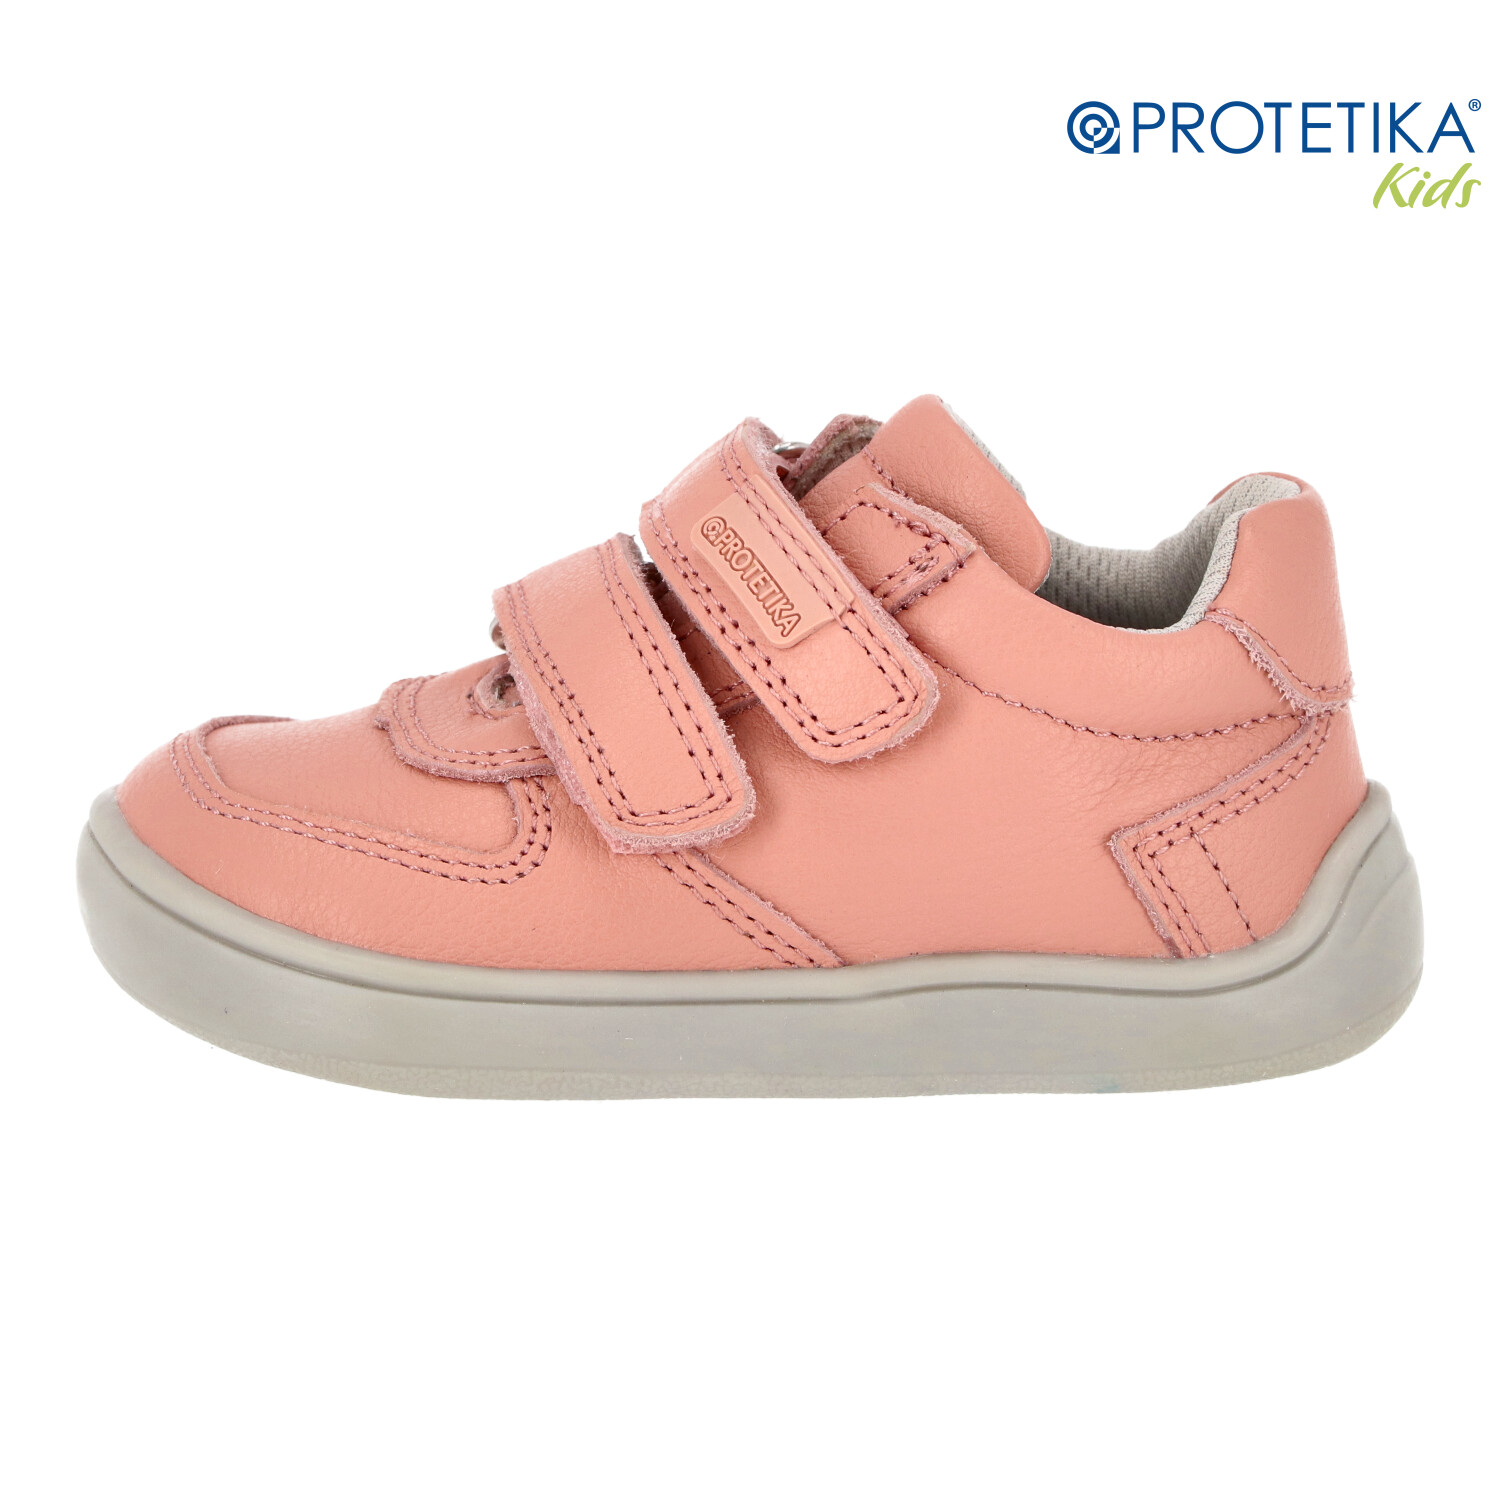 Protetika - barefootové topánky KEROL pink